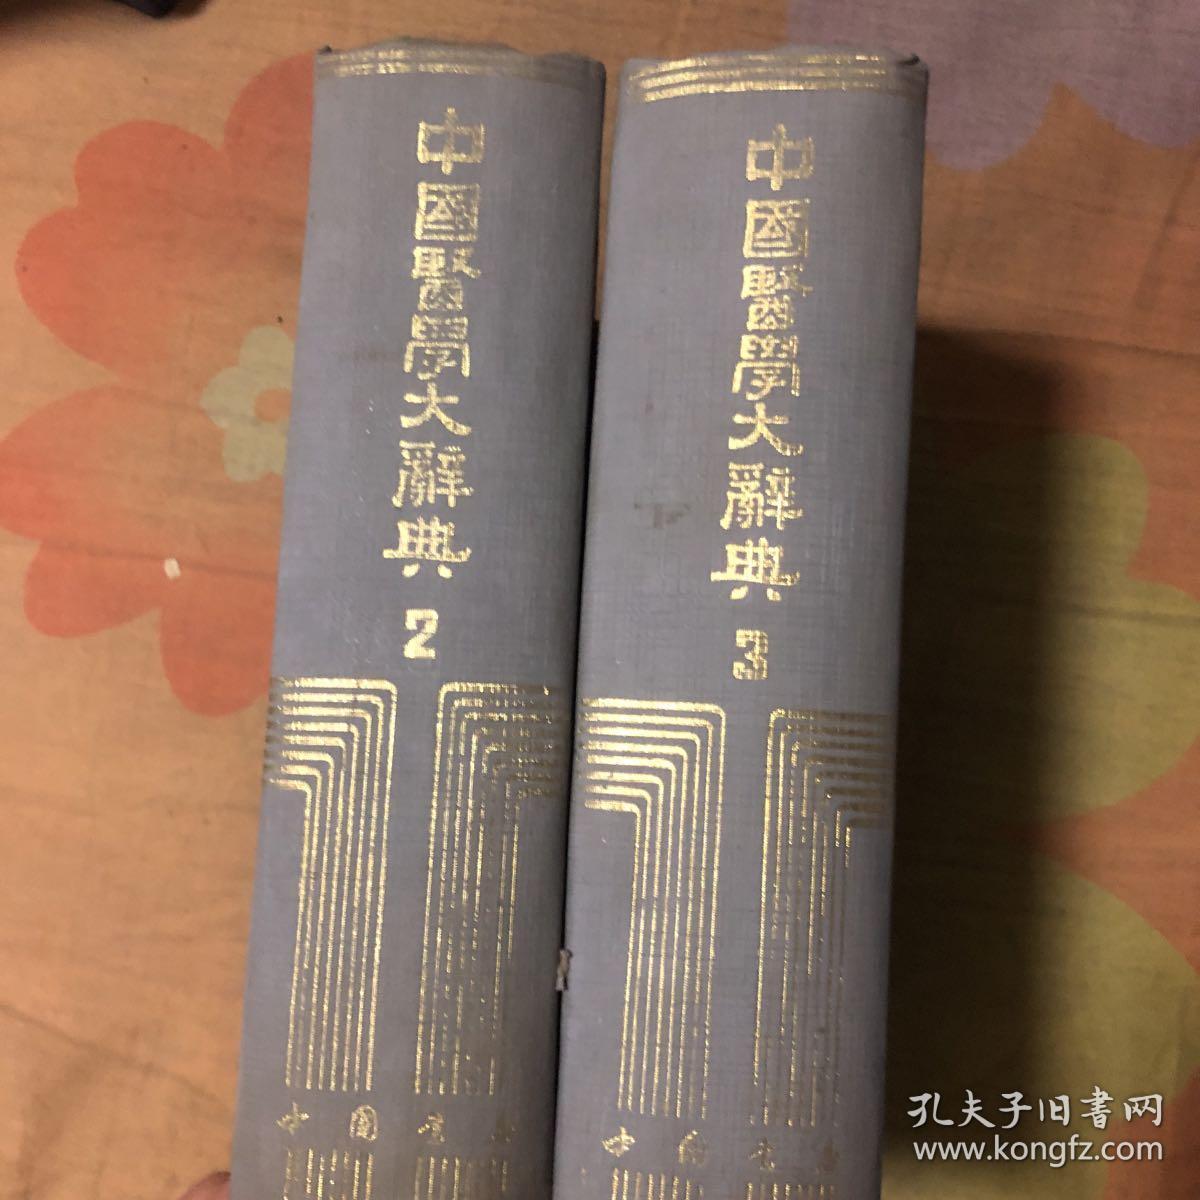 中国医学大词典 第2–3册（货号R4）